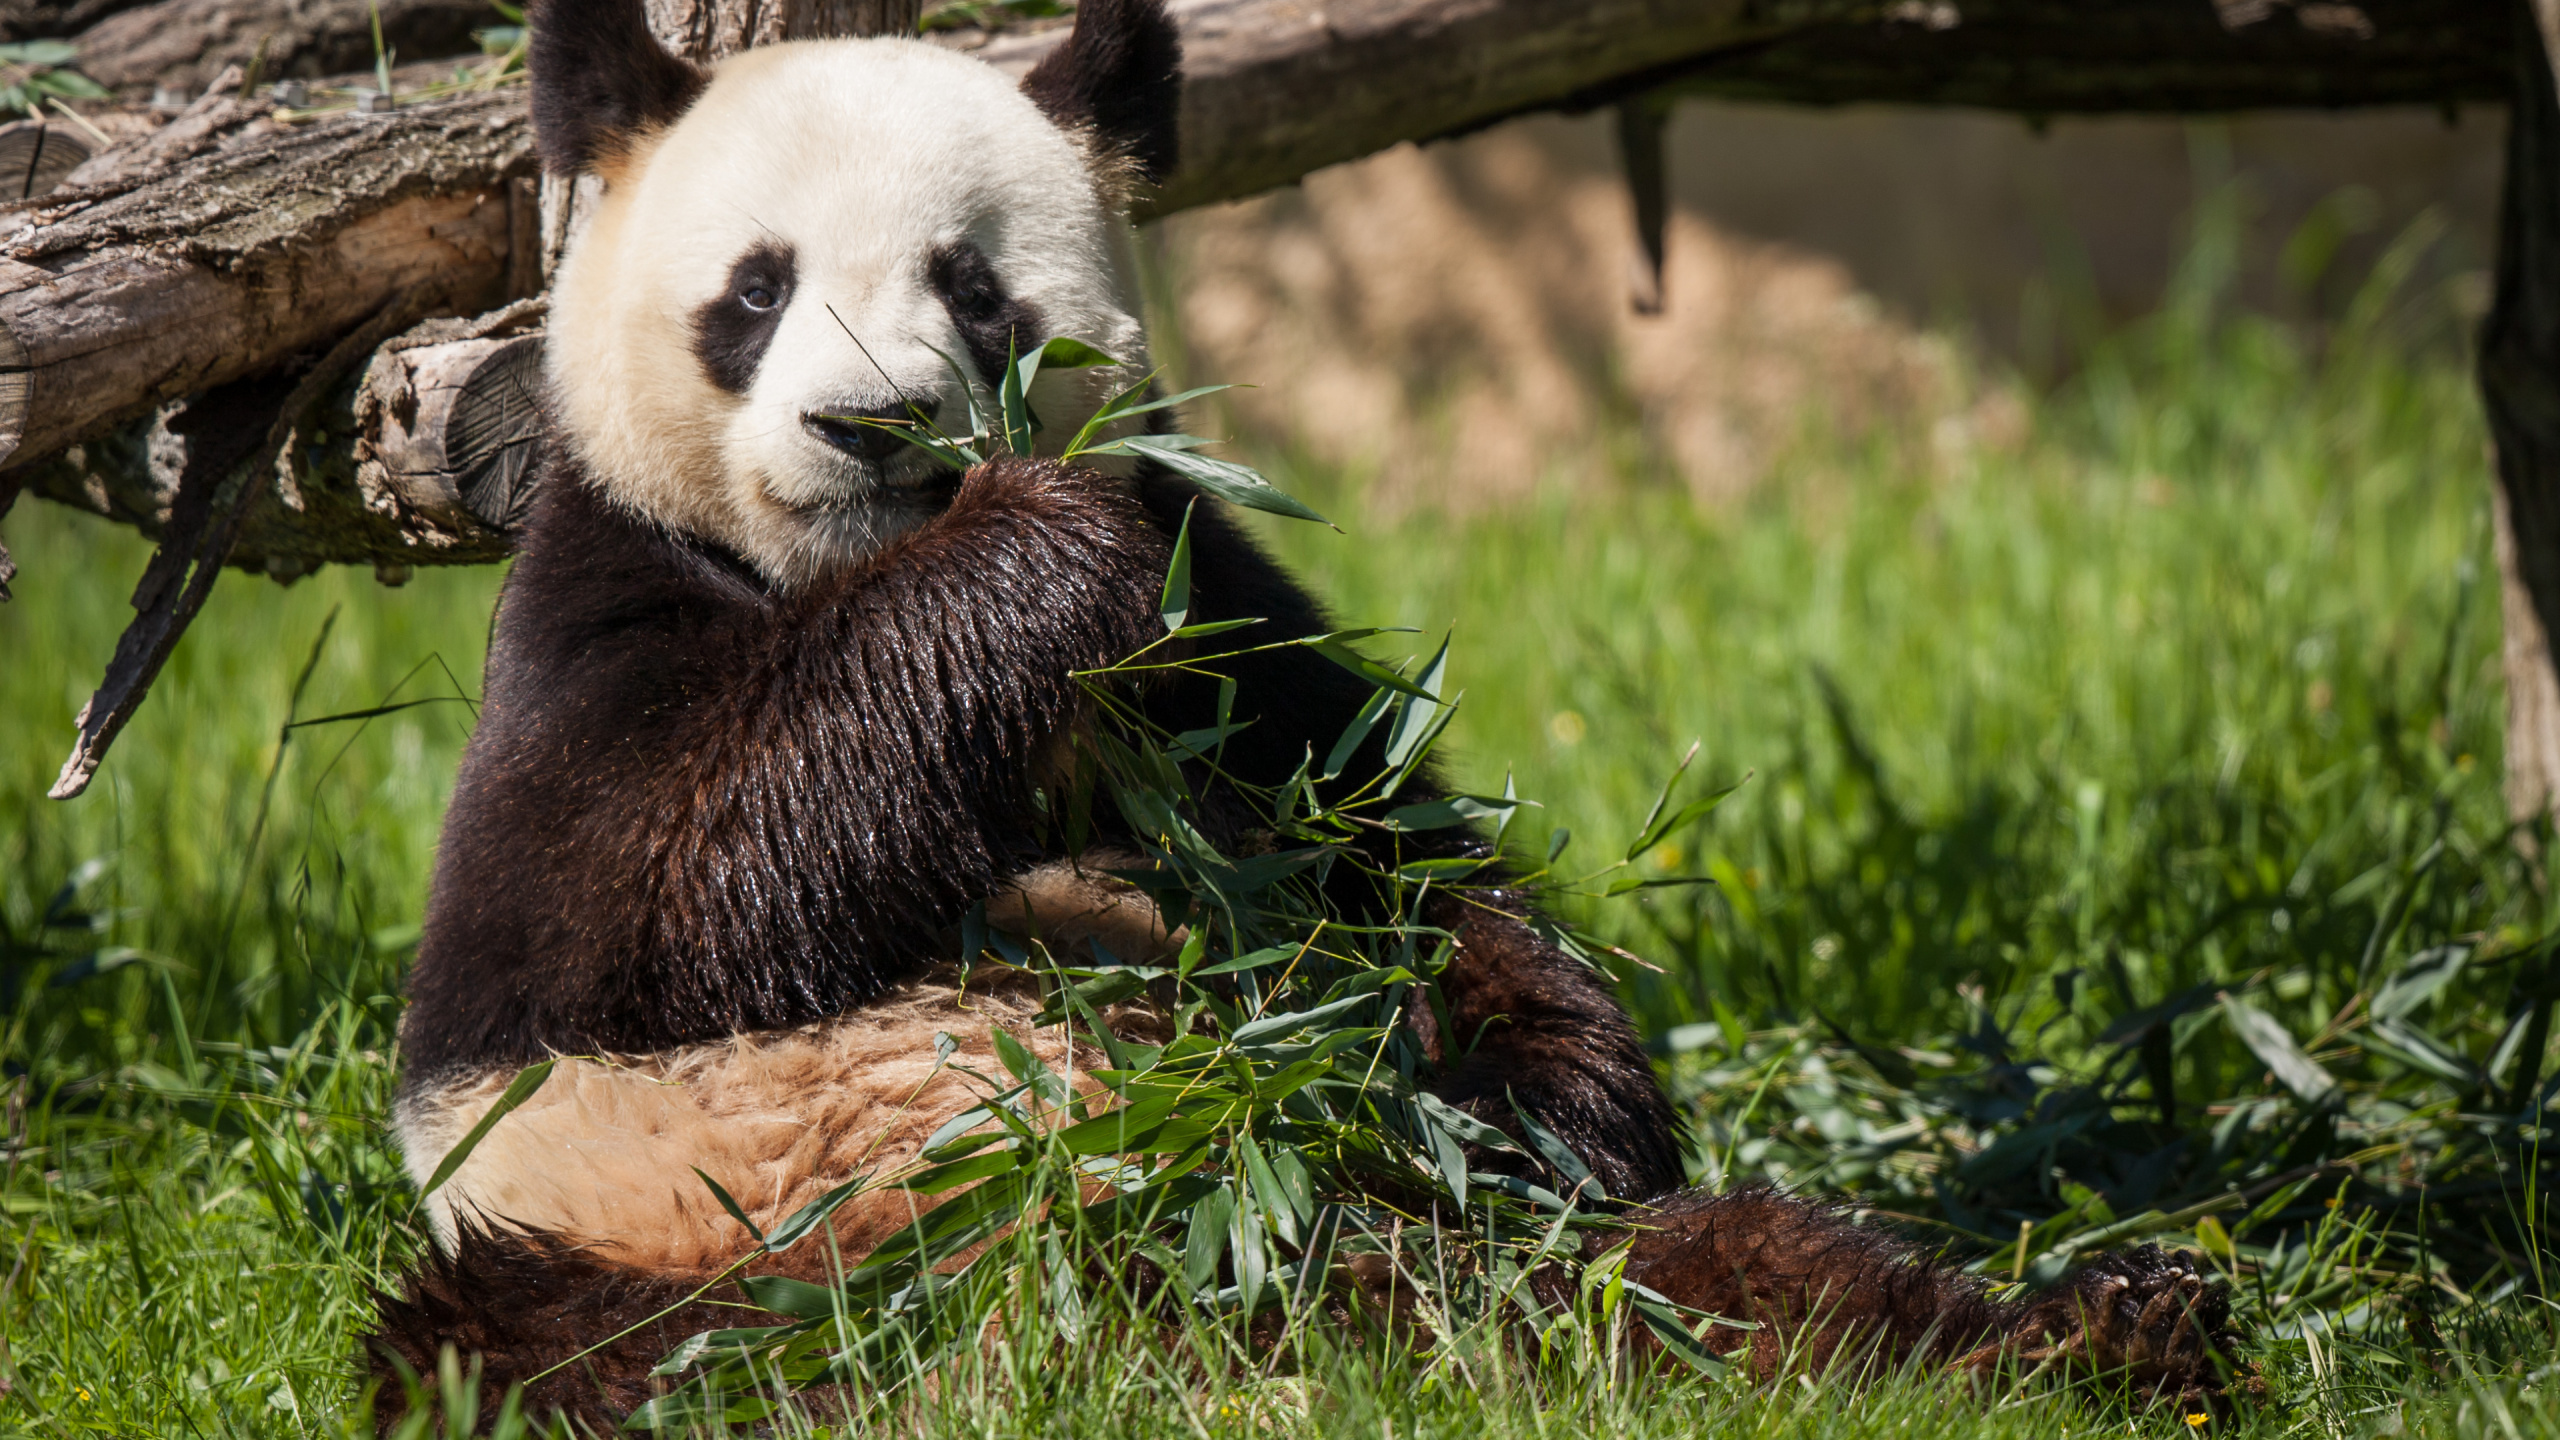 大熊猫, 小熊猫, 陆地动物, 熊, 动植物 壁纸 2560x1440 允许